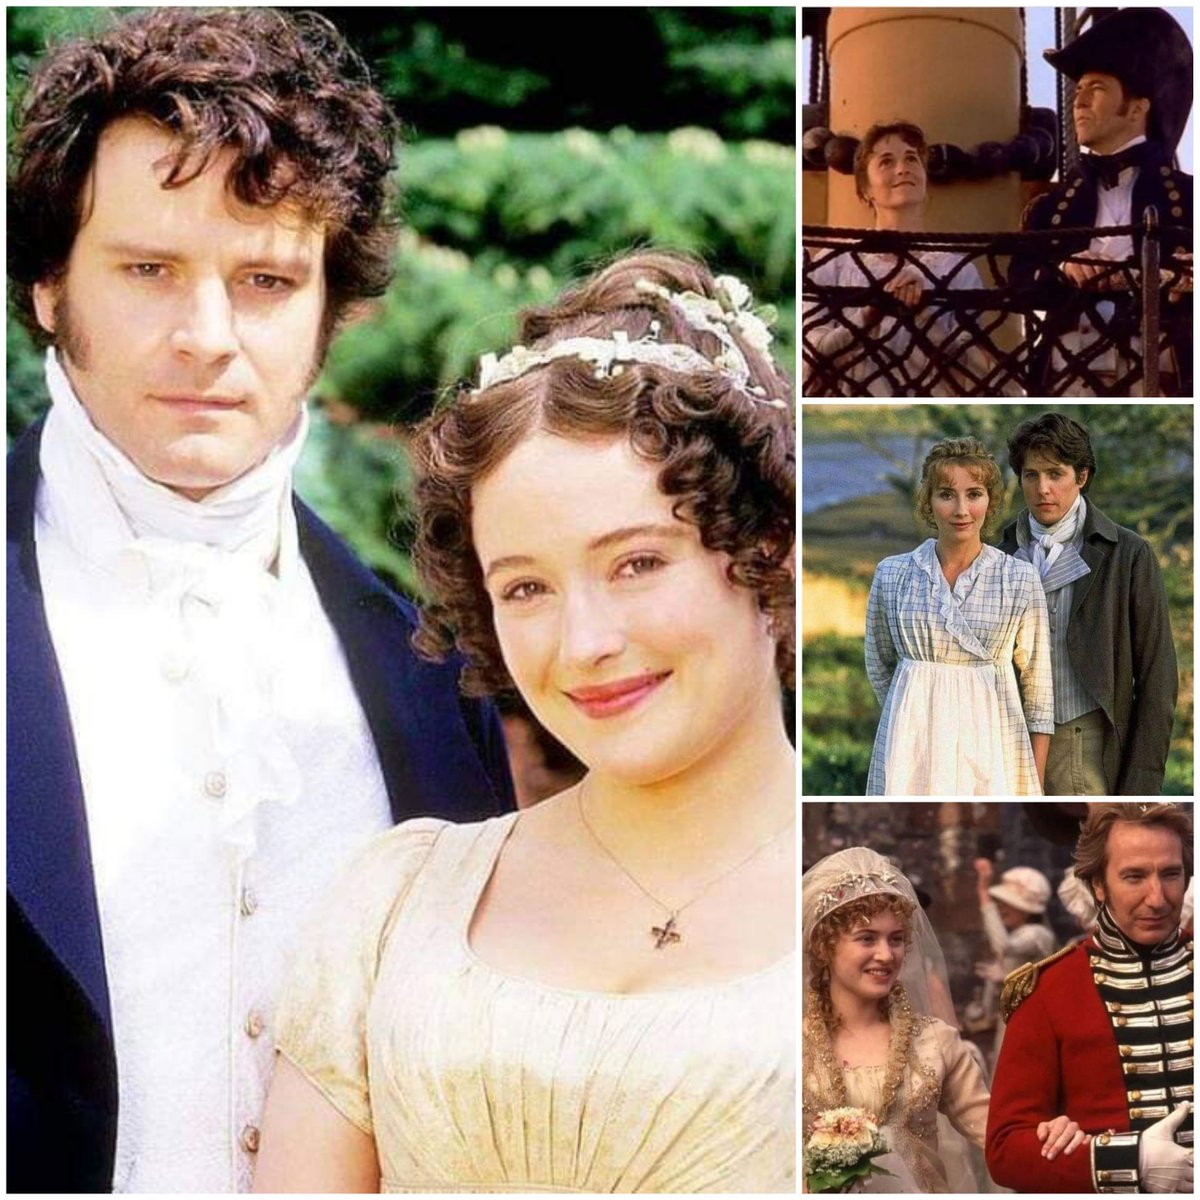 It was a very good Jane Austen year (1995) 😊👍💕

#janeausten #prideandprejudice1995 #senseandsensibility1995 #persuasion1995 #mrdarcy #elizabethbennet #captainwentworth #anneelliott #elinordashwood #mariannedashwood